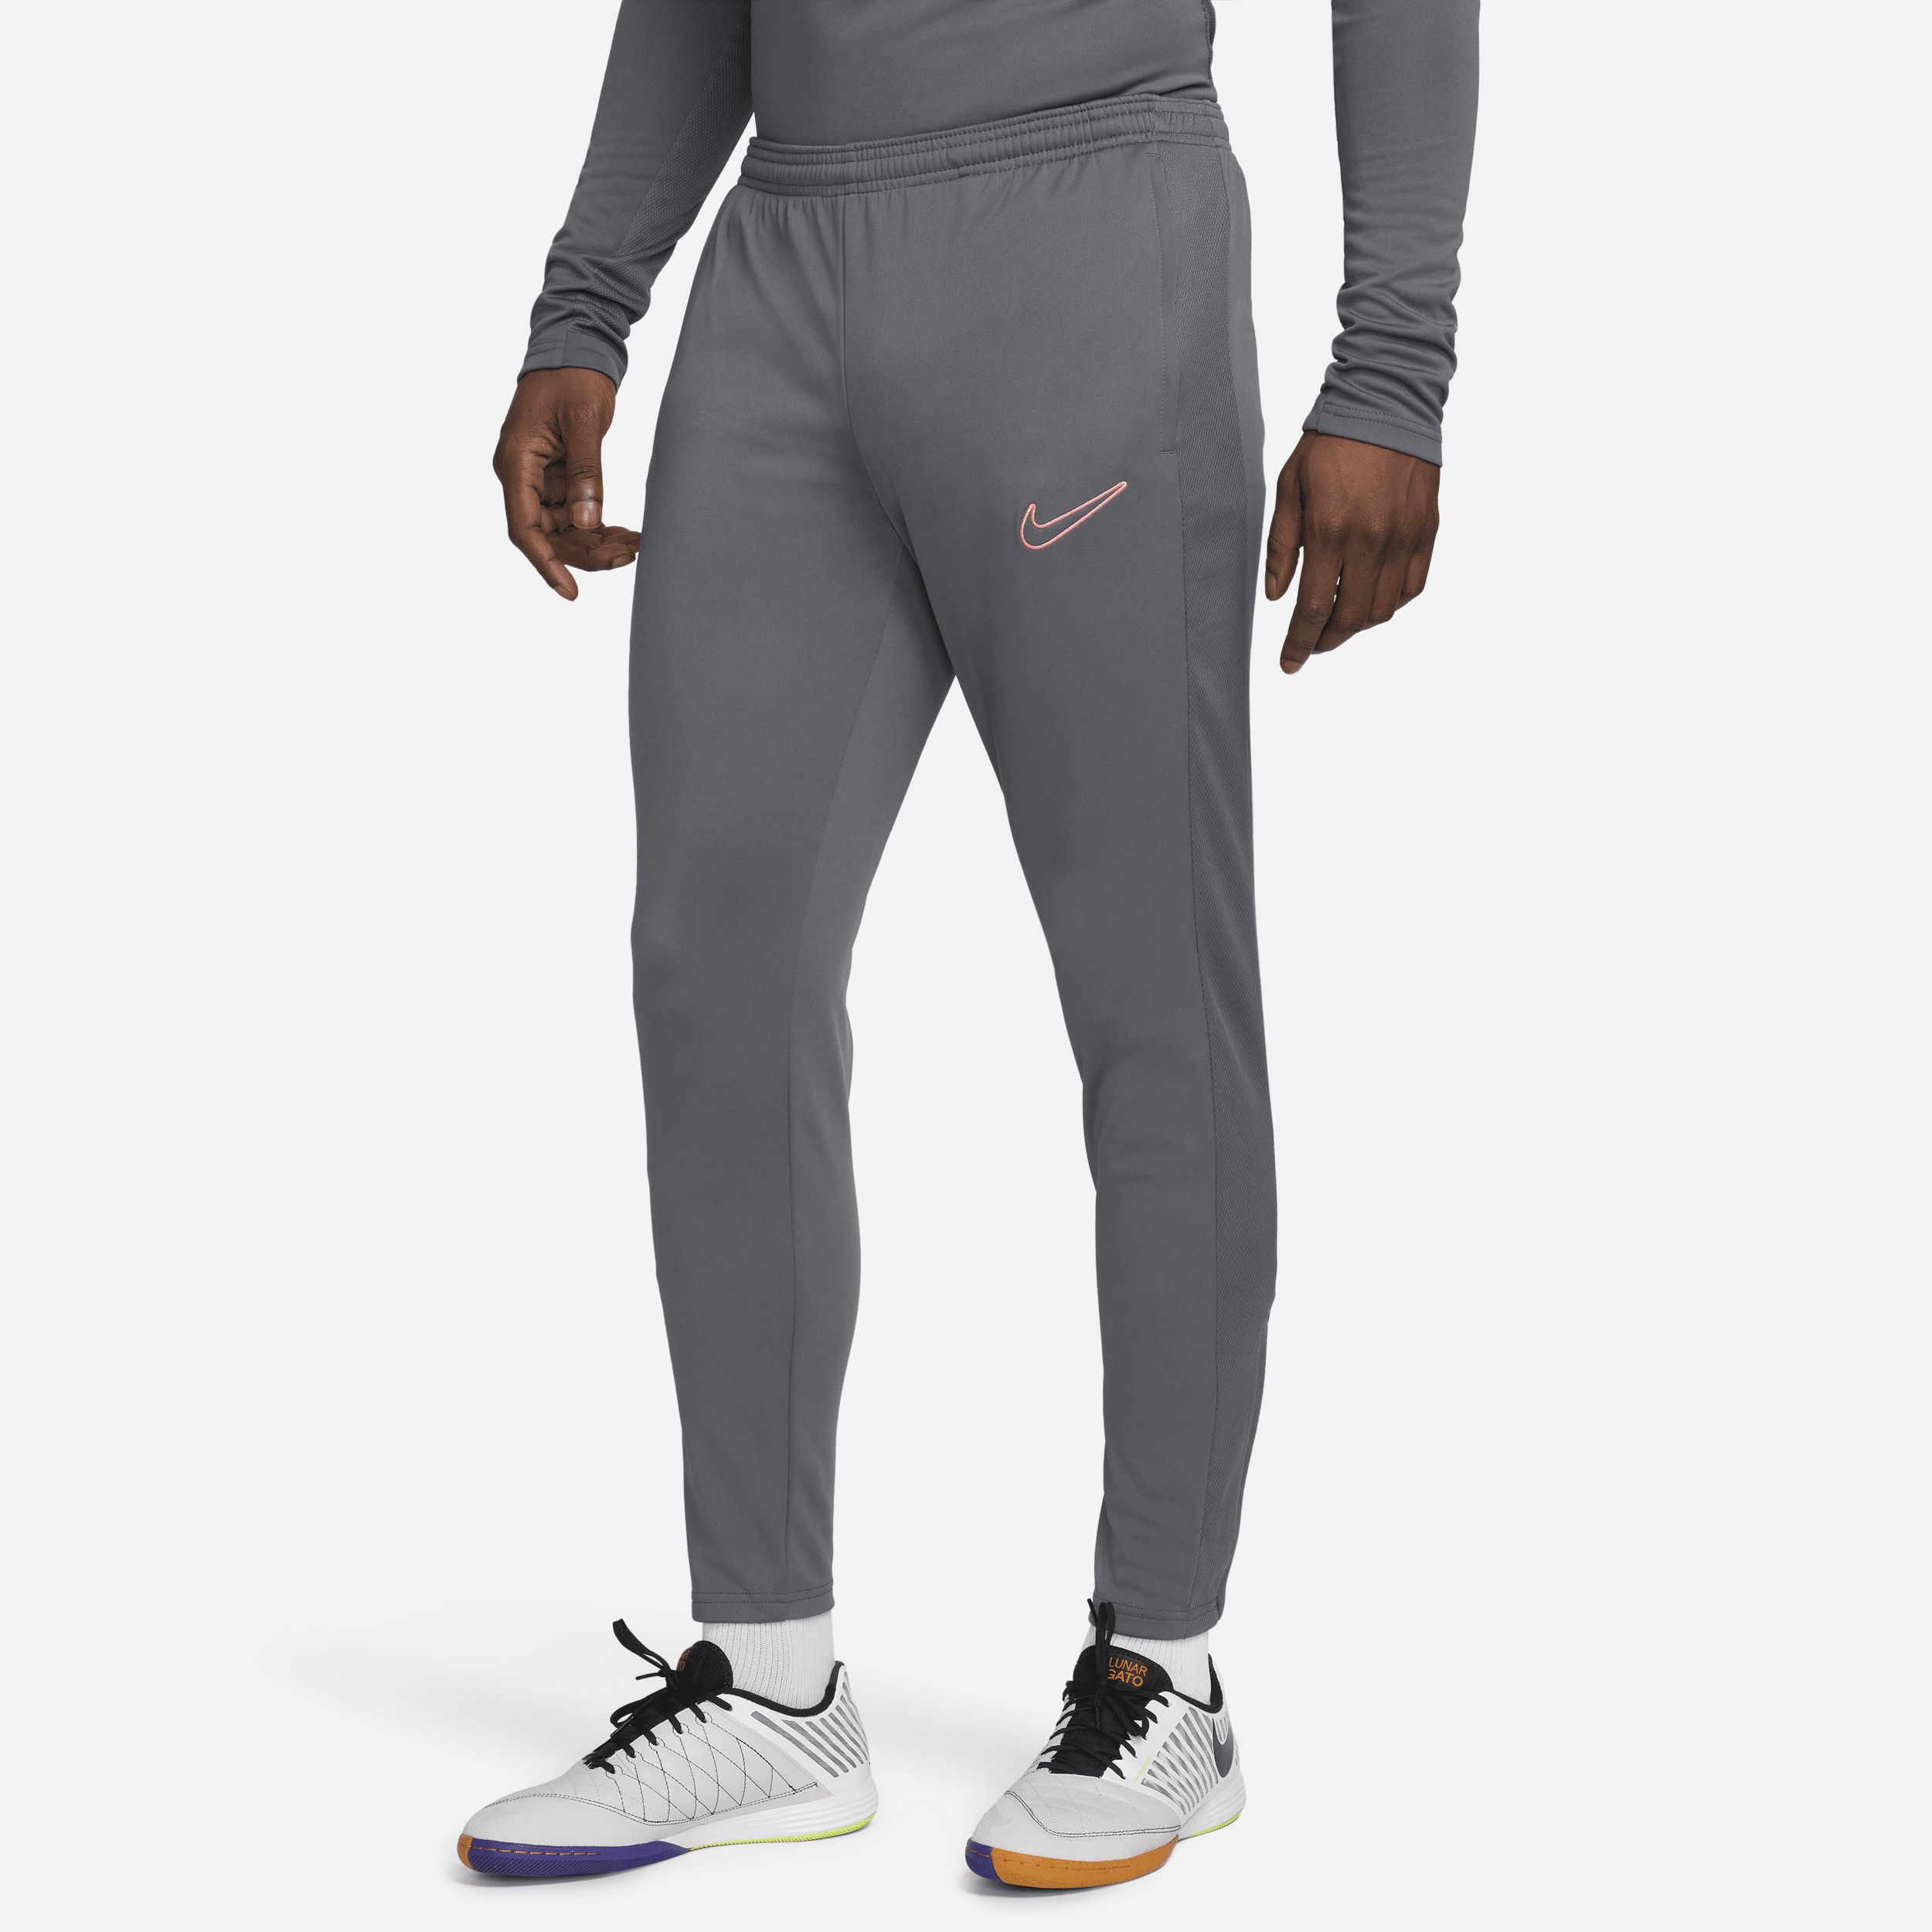 Nike Dri-FIT Academy-fodboldbukser til mænd - grå